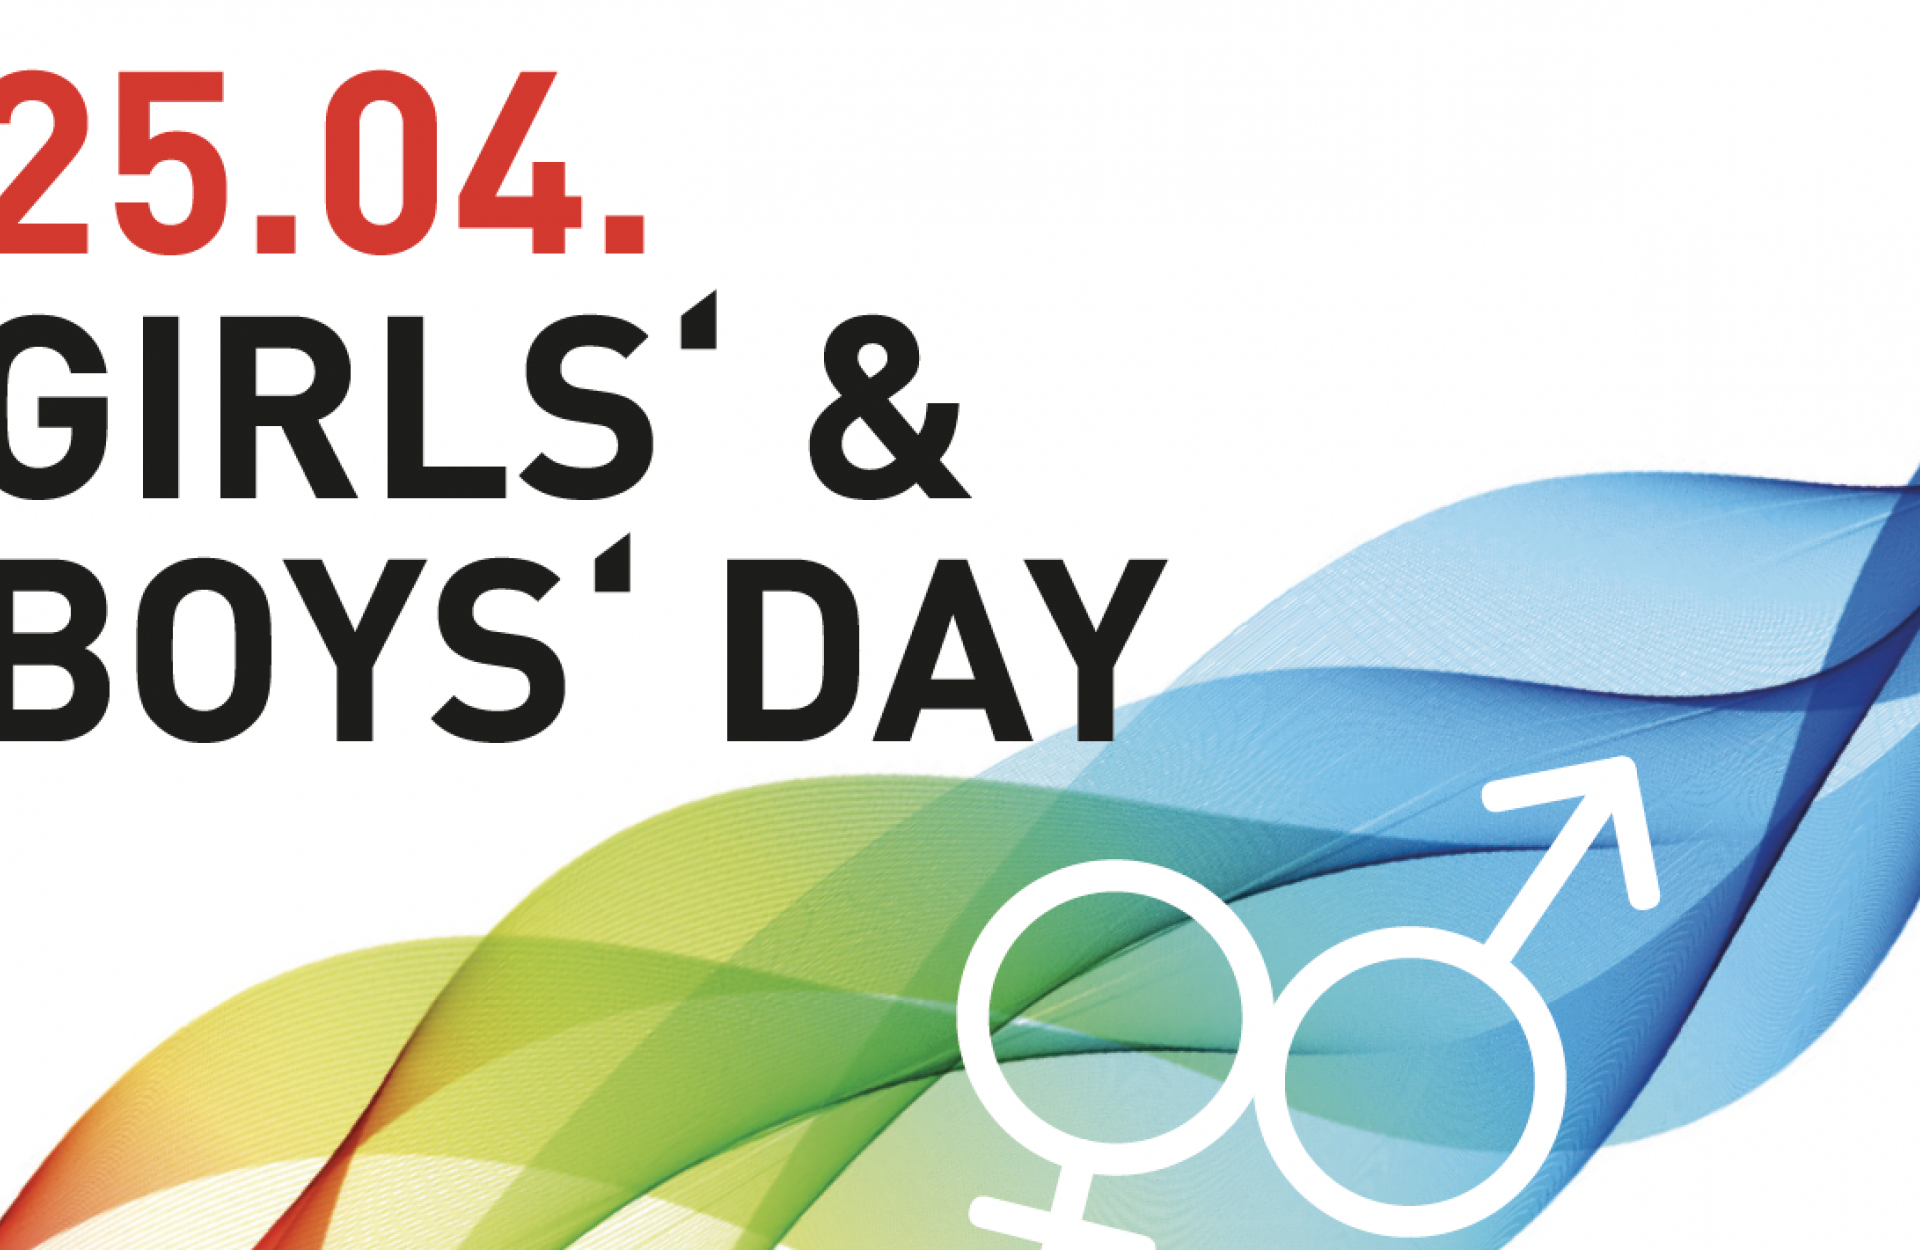 Schriftzug: 25.04. Girls und Boys Day mit bunten Farben 